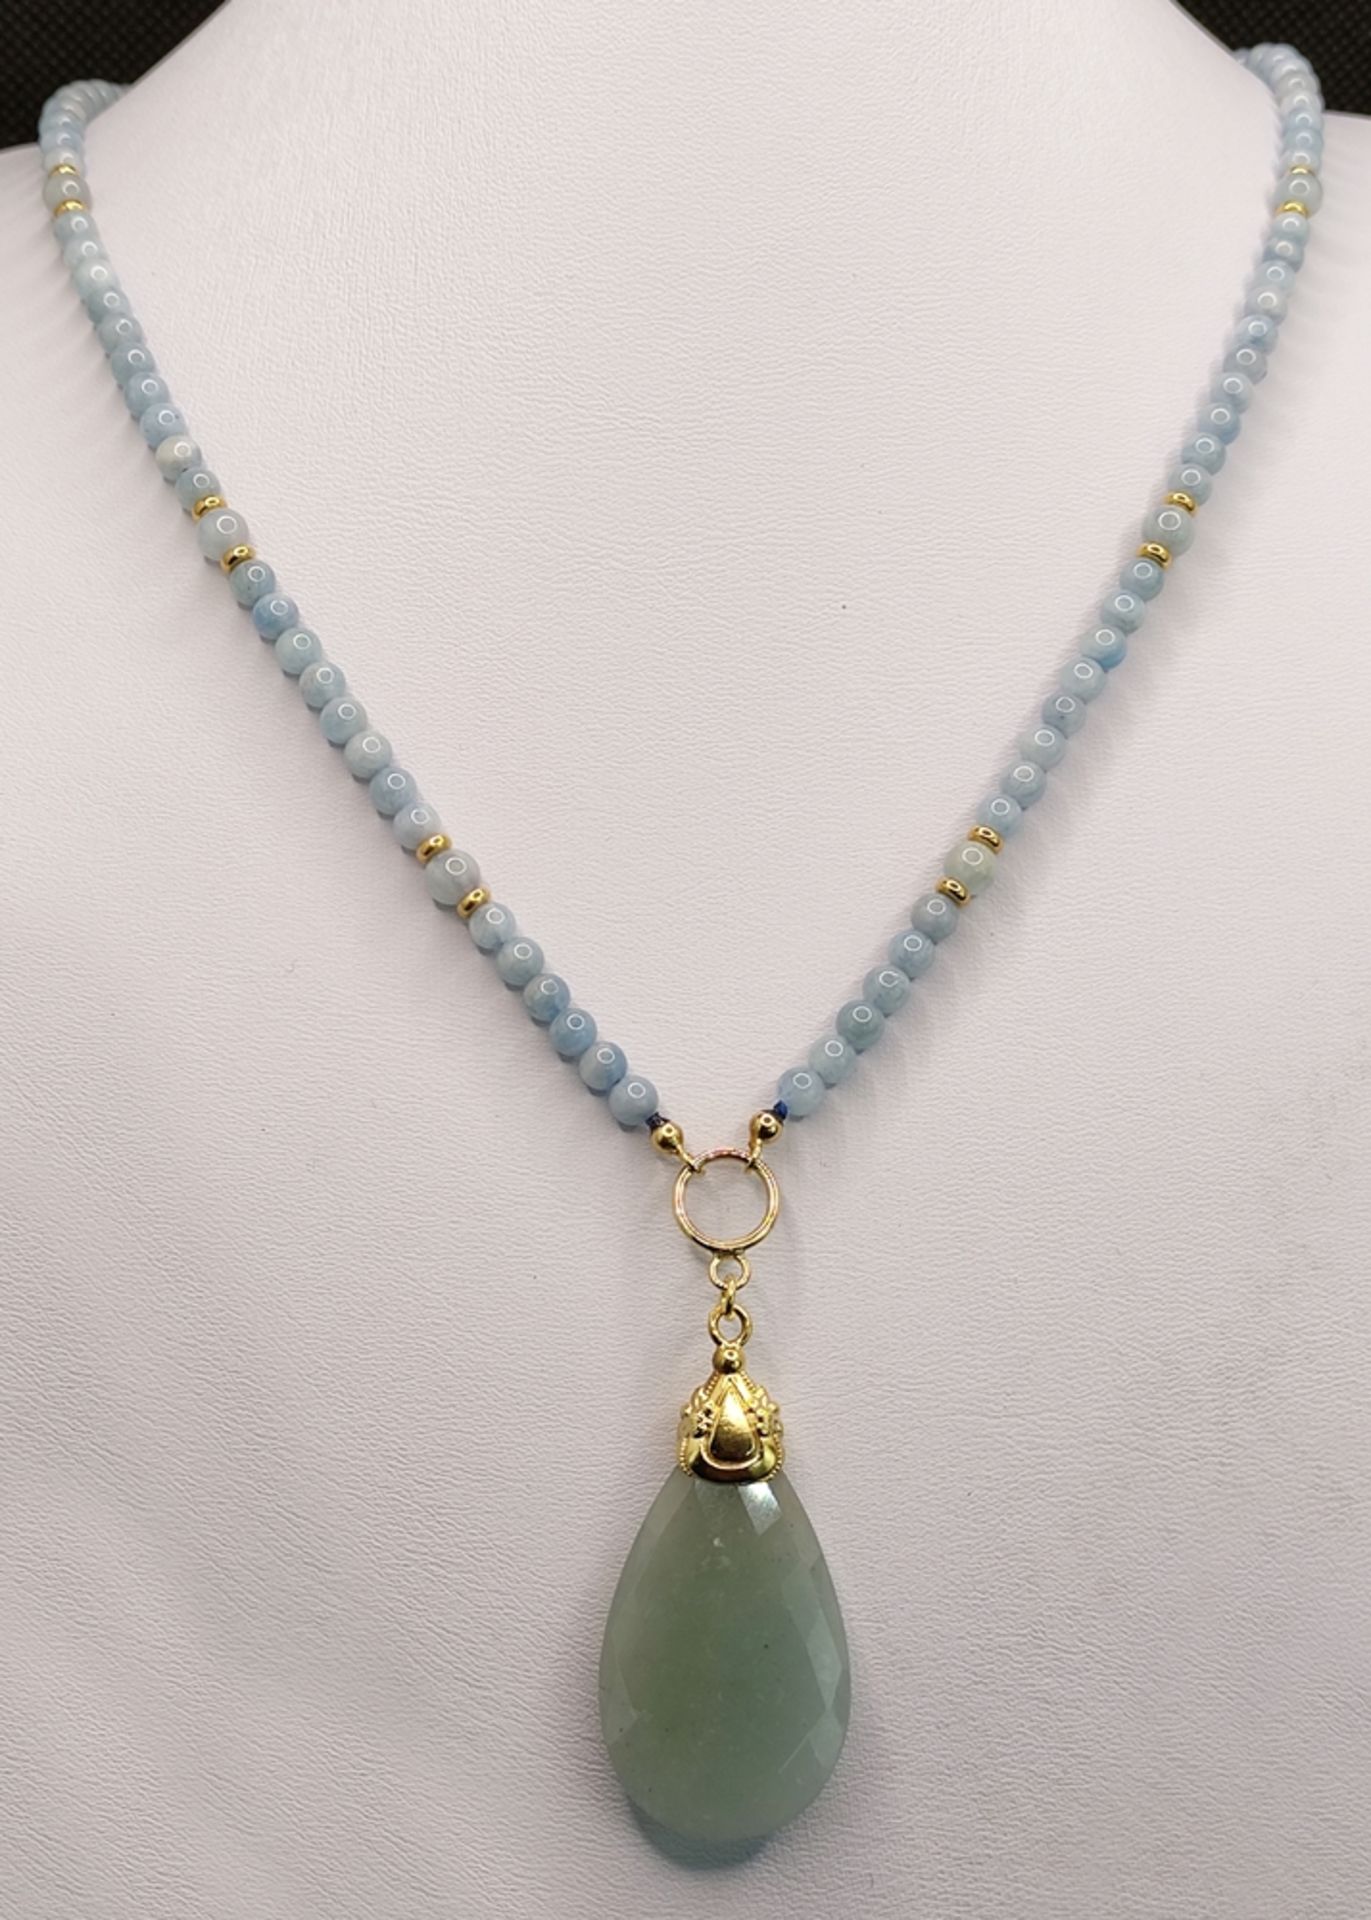 Aquamarine necklace with aquamarine drop pendant, round polished checked aquamarine spheres - Image 2 of 3